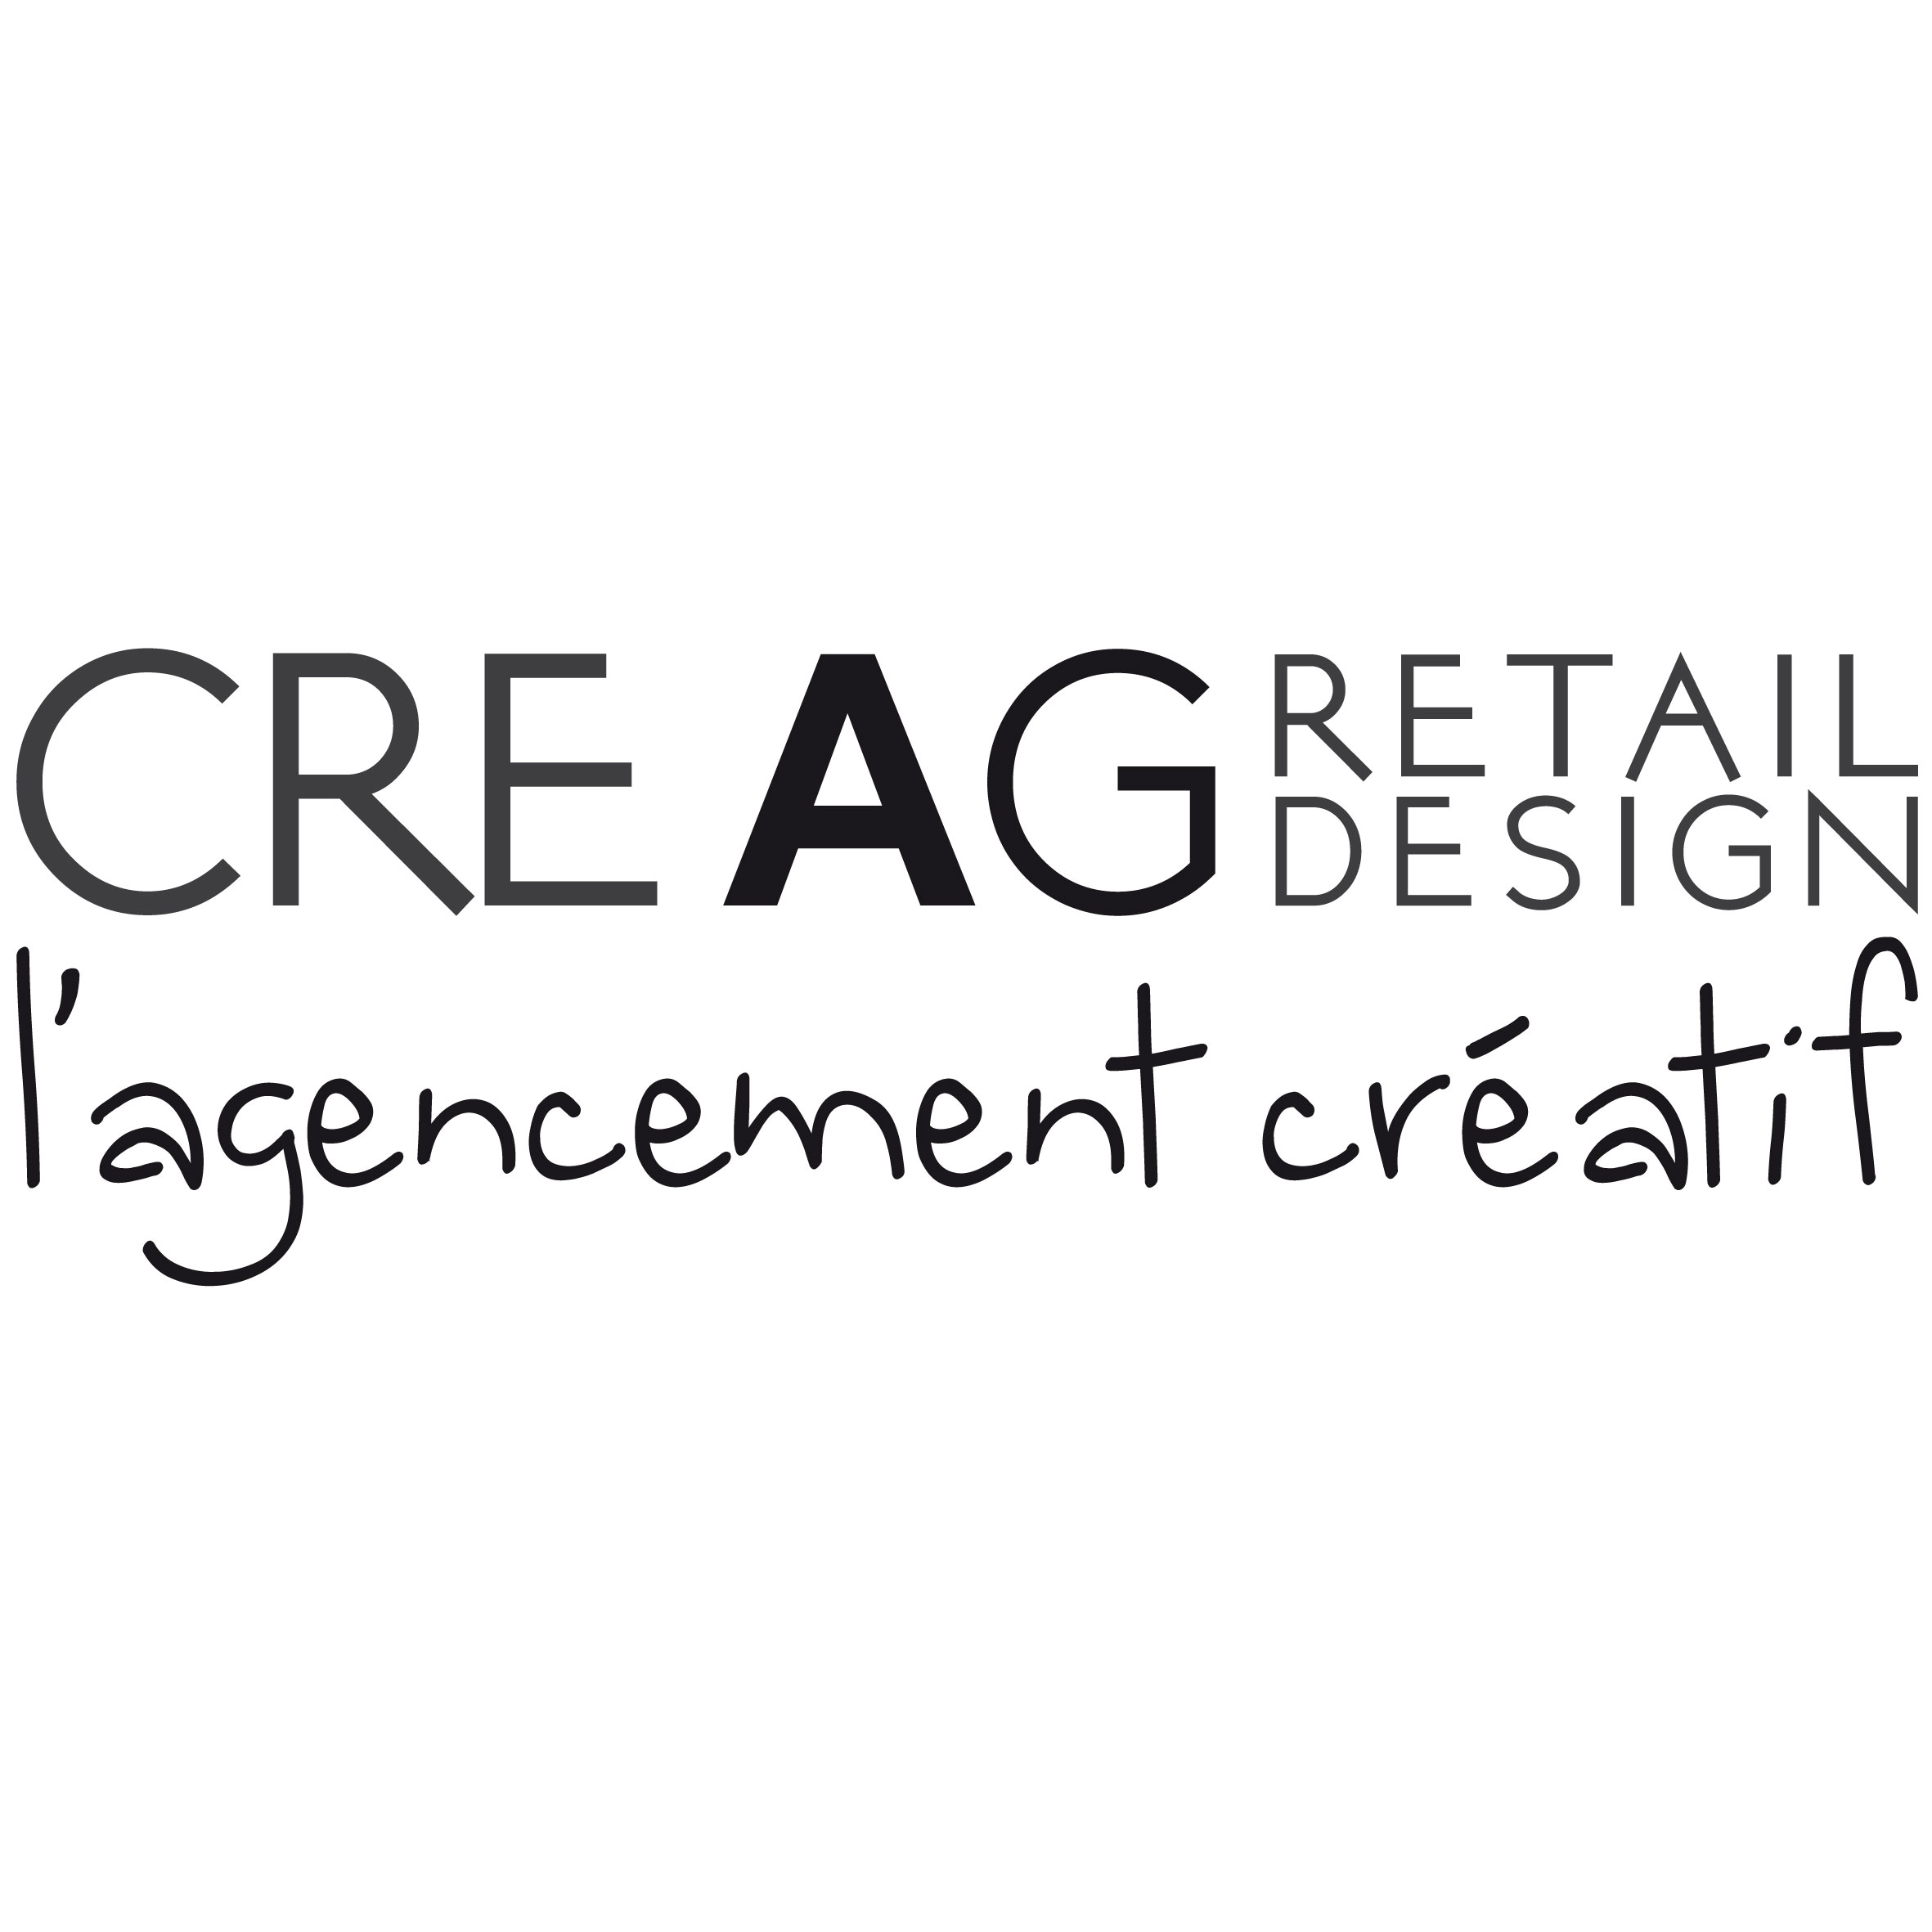 CREAG Retail Design